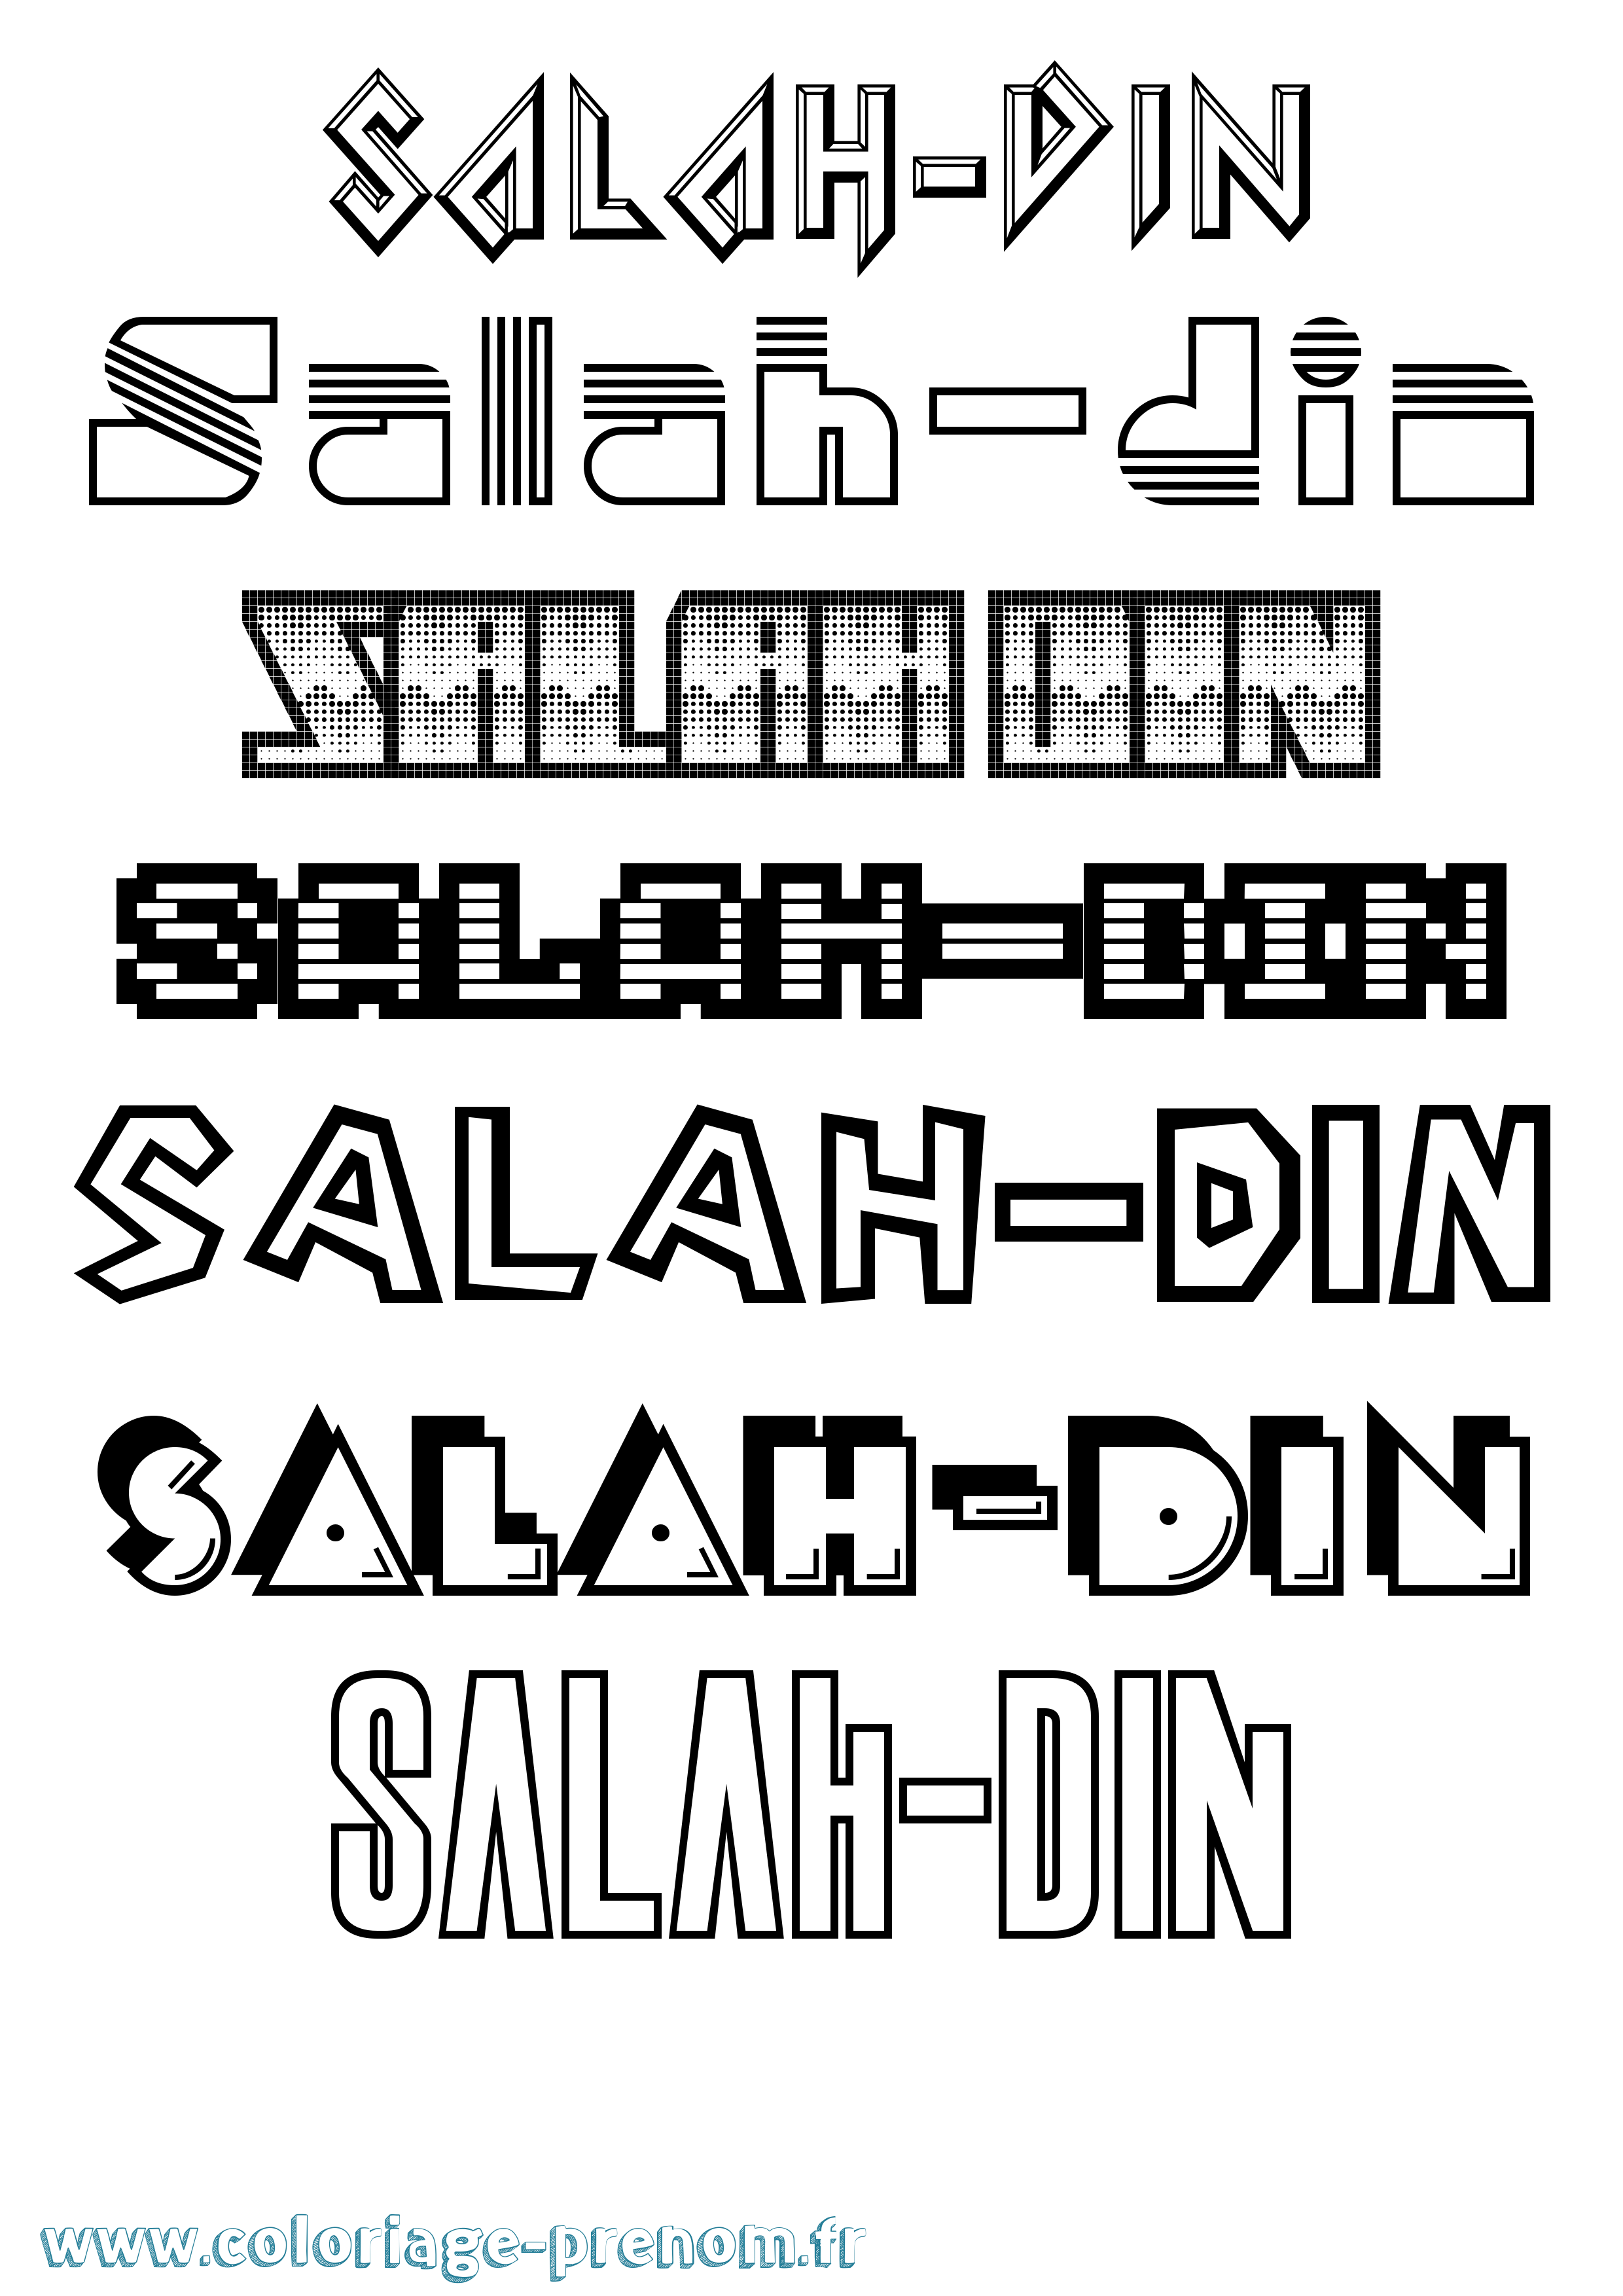 Coloriage prénom Salah-Din Jeux Vidéos